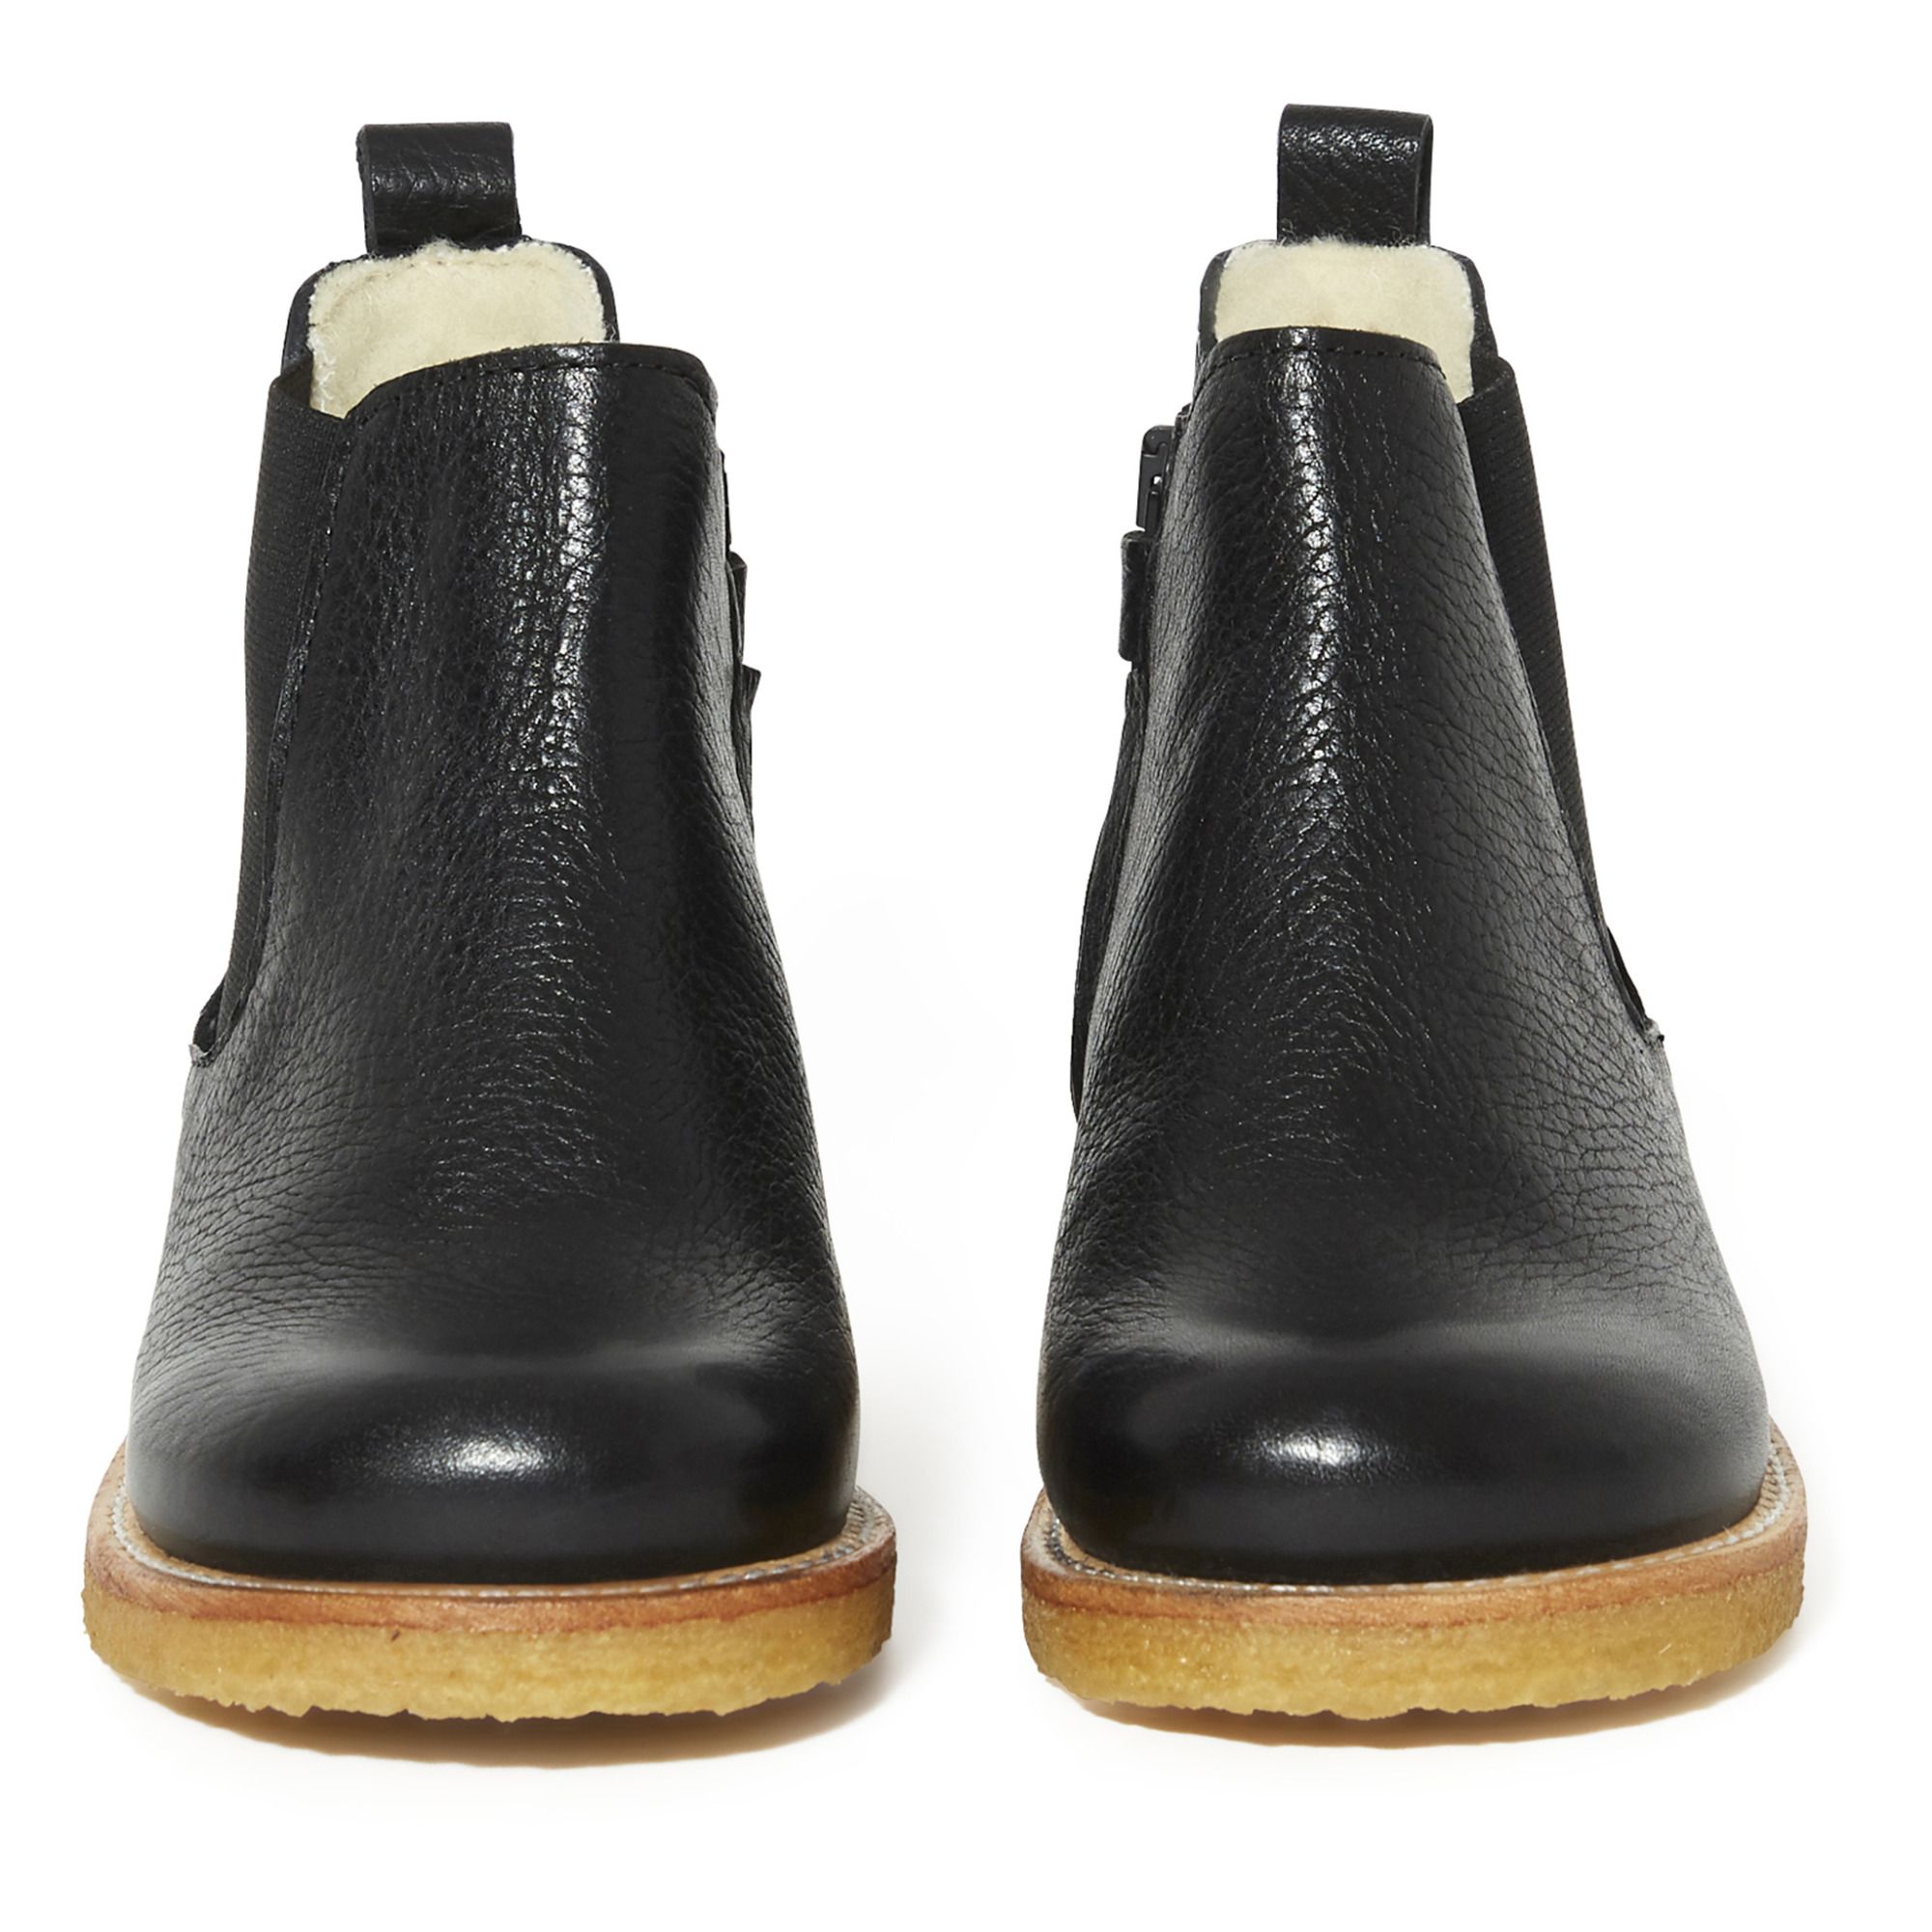 Formindske på den anden side, Tæt Angulus - Fur-lined Chelsea Boots - Black | Smallable